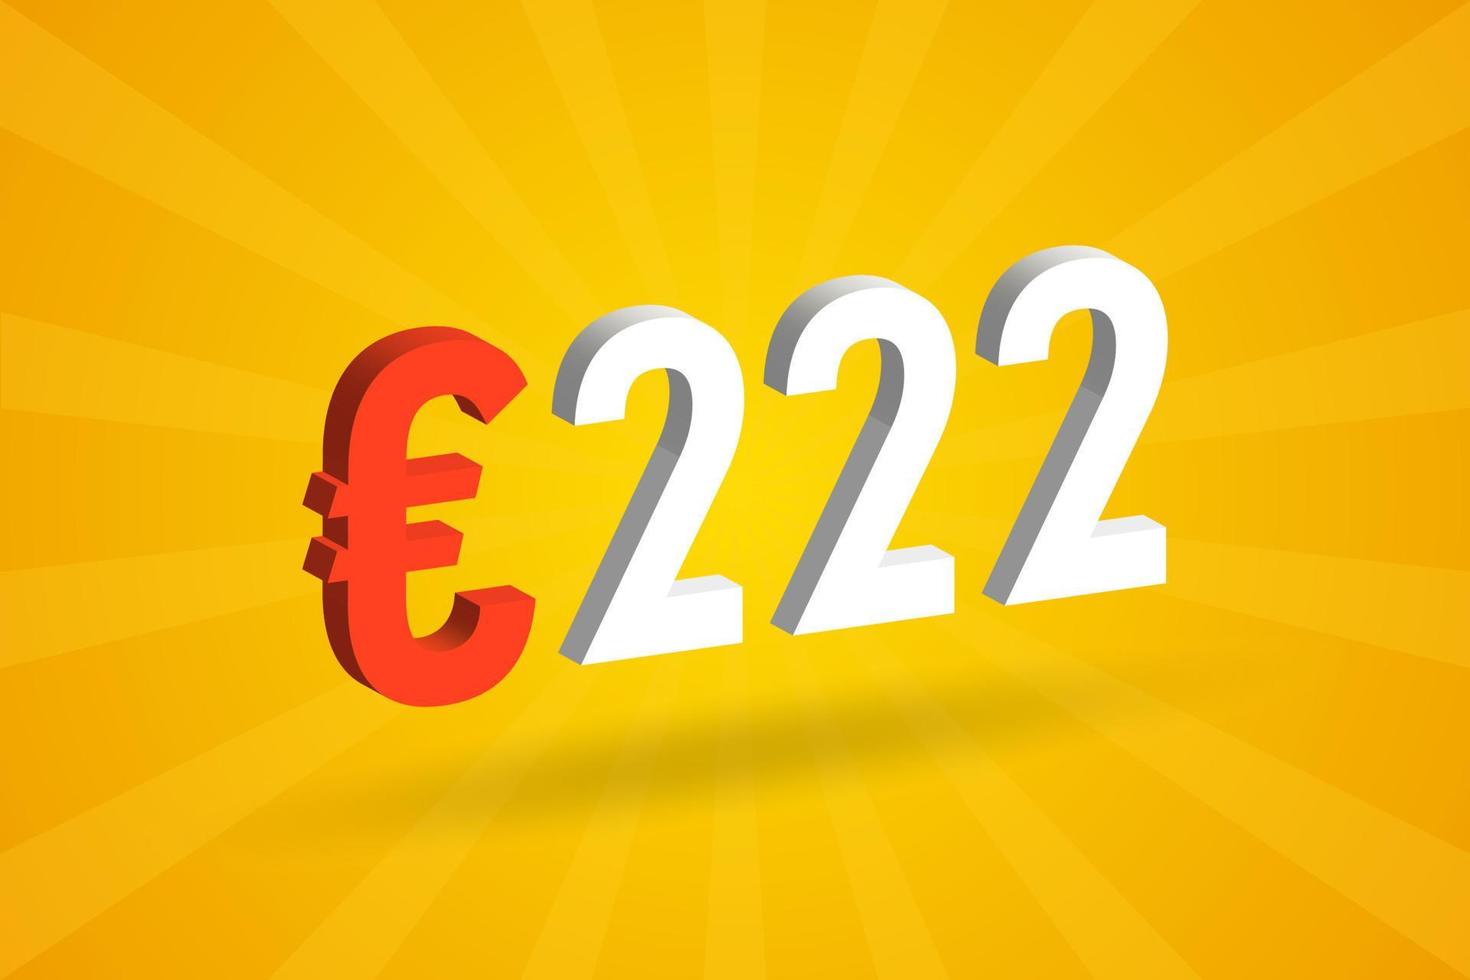 222-Euro-Währung 3D-Vektortextsymbol. 3d 222 Euro Euro-Geldvorratvektor der Europäischen Union vektor